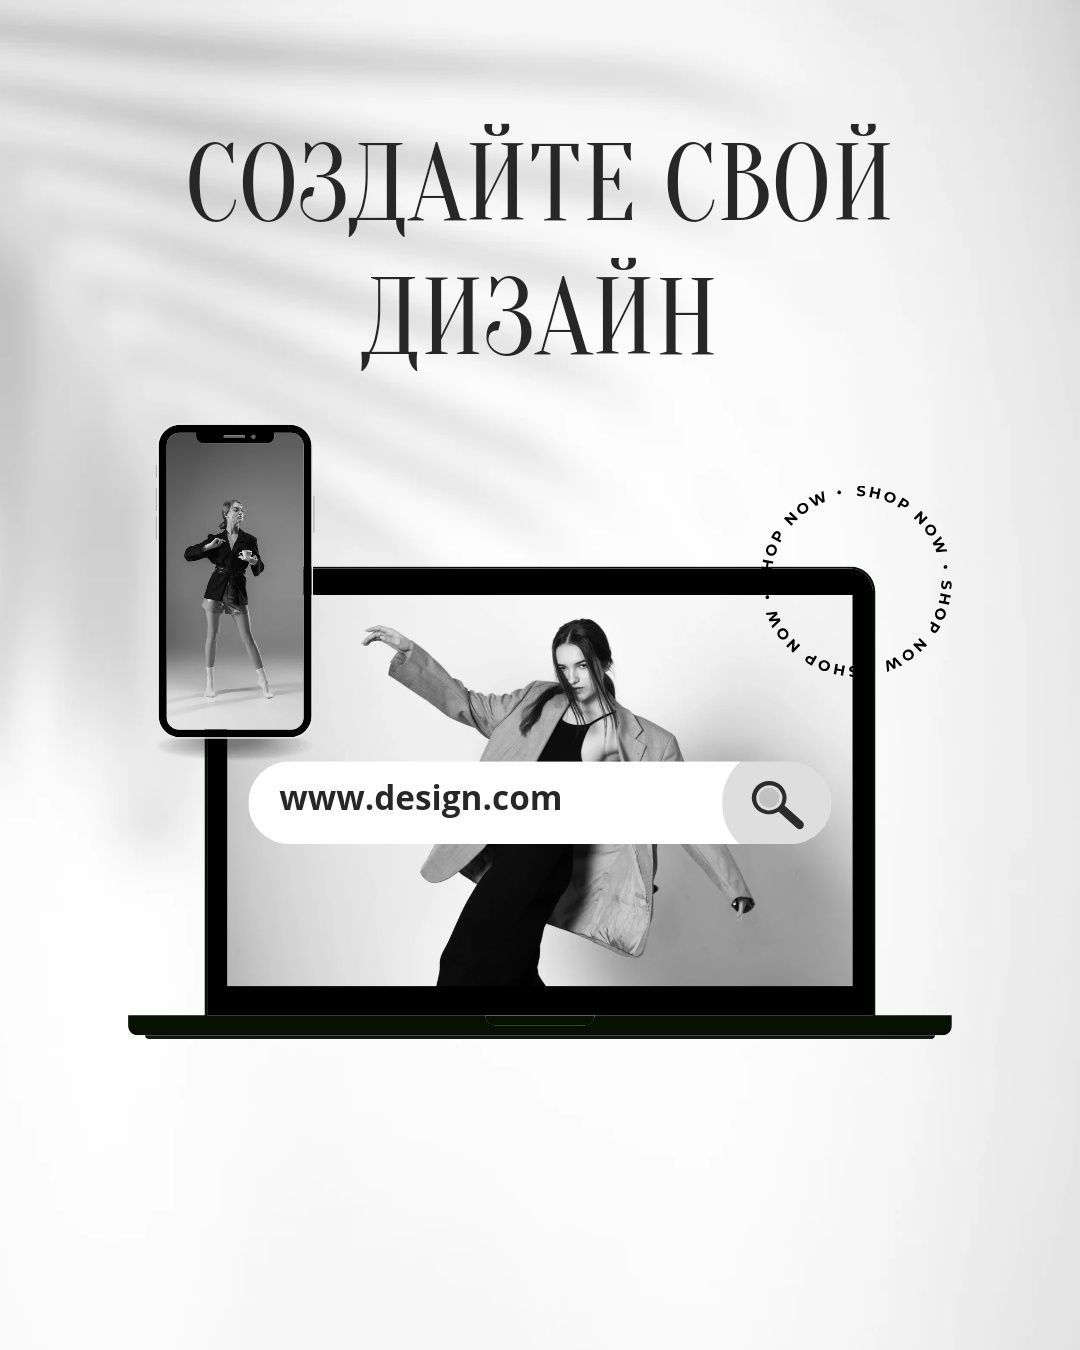 Услуги Дизайнера (web design I веб дизайн)
графический дизайнер